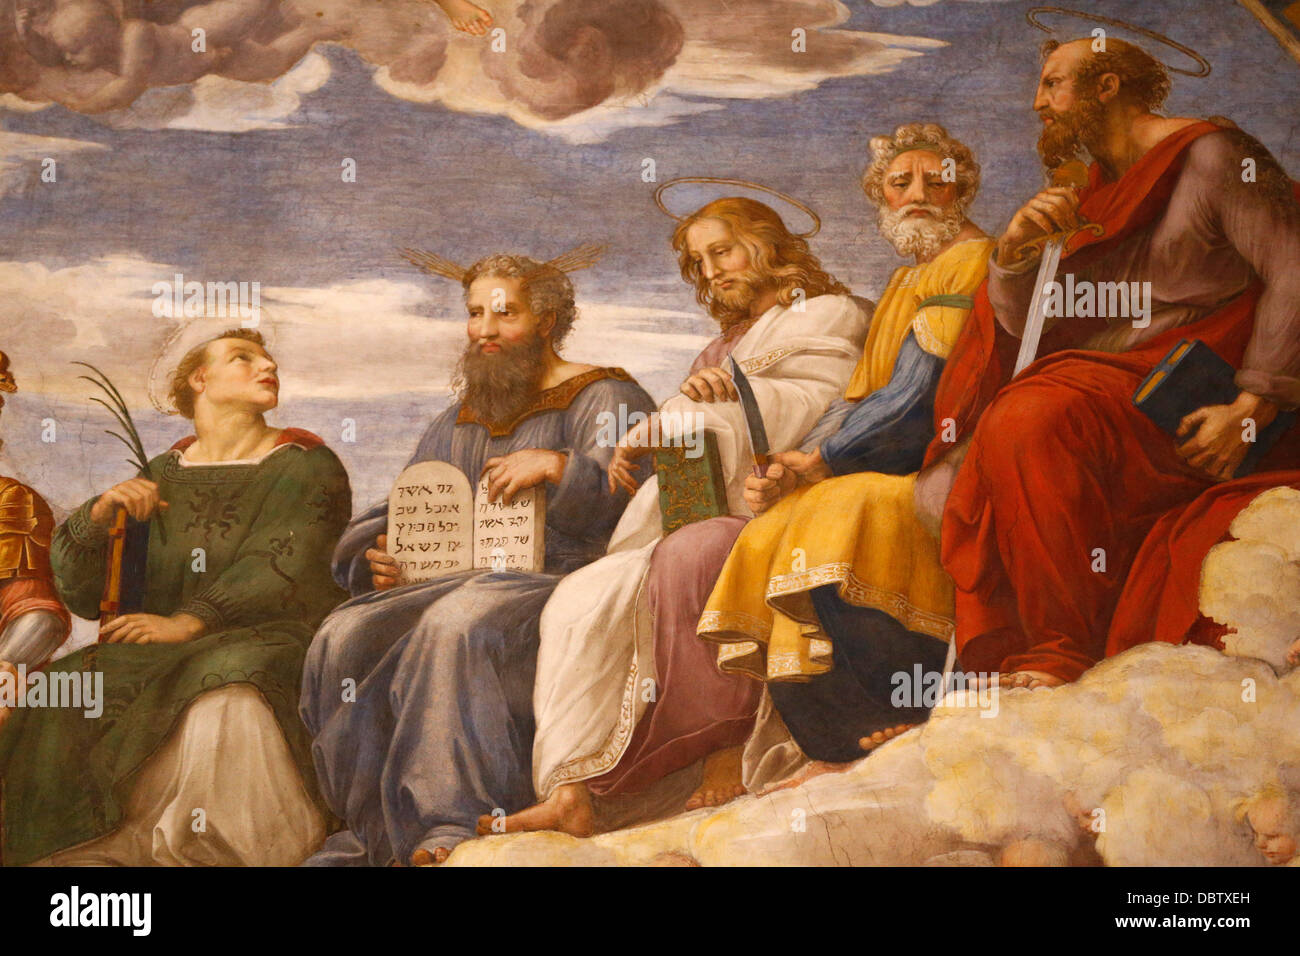 Dettaglio della pittura della disputa oltre il Santissimo Sacramento, il Museo del Vaticano, Vaticano, Roma, lazio, Italy Foto Stock